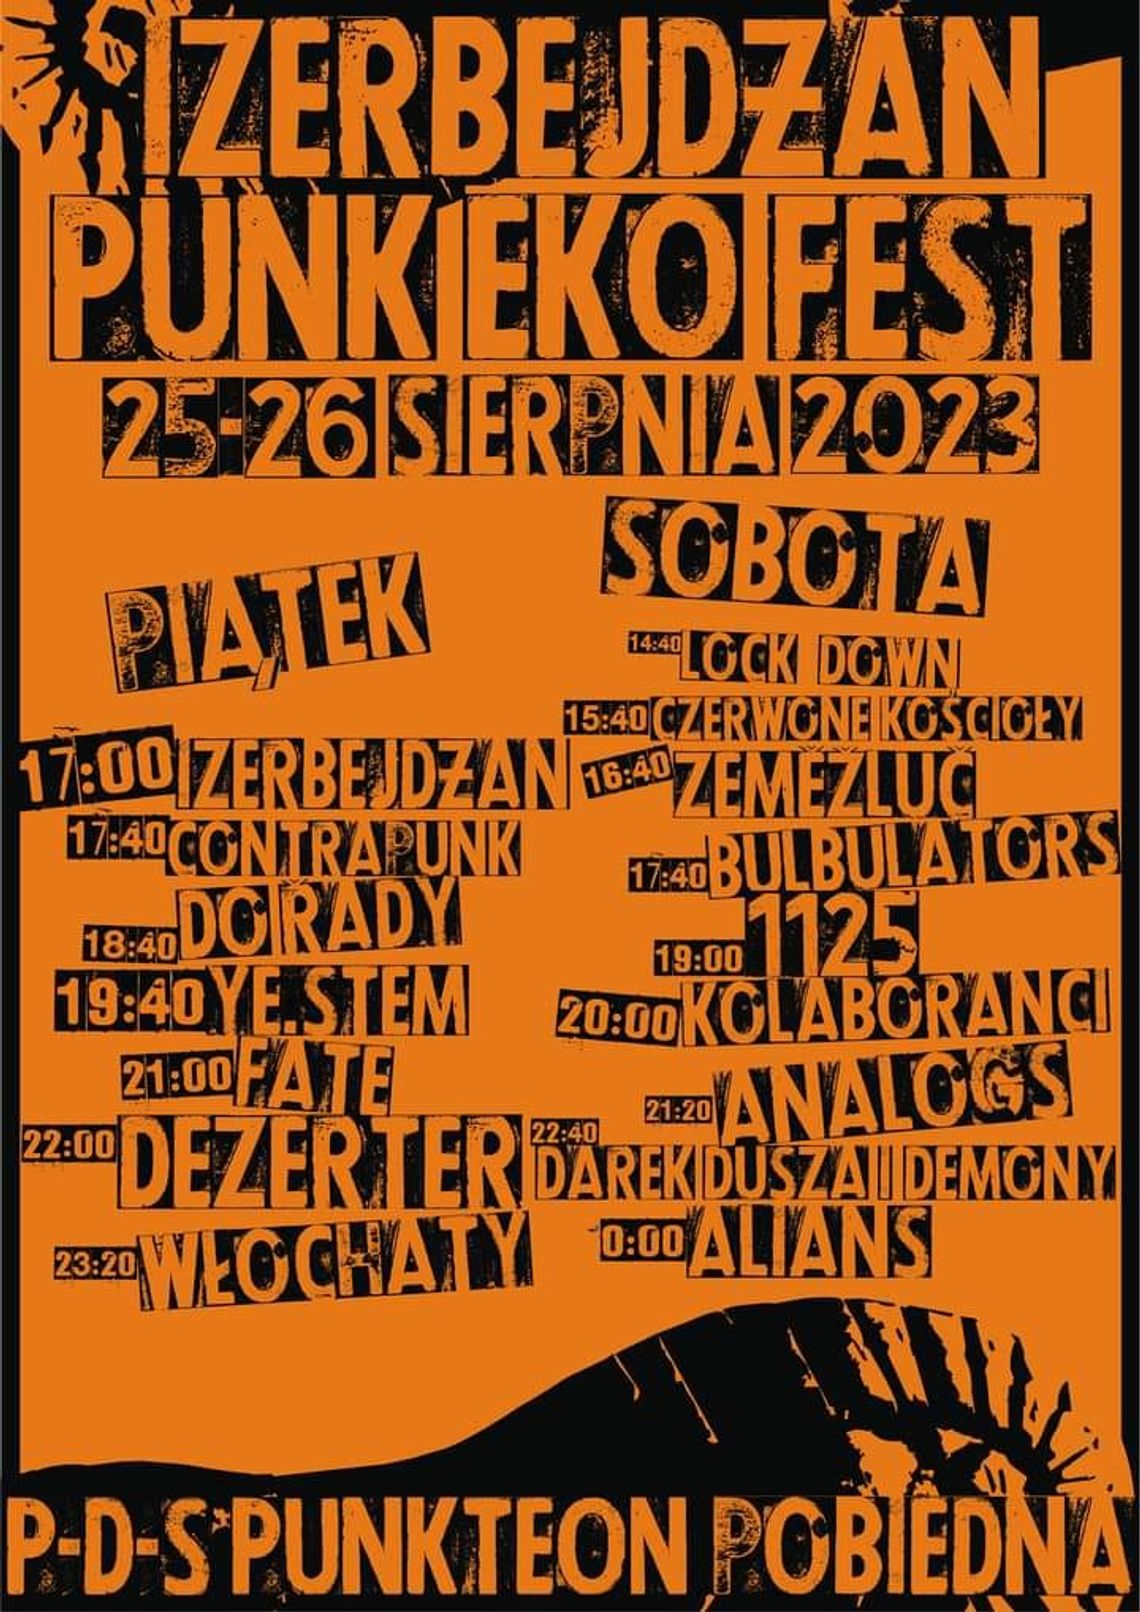 Izerbejdżan Punk Eko Fest. 17 kapel w tym Dezerter, Włochaty, Analogs i Alians